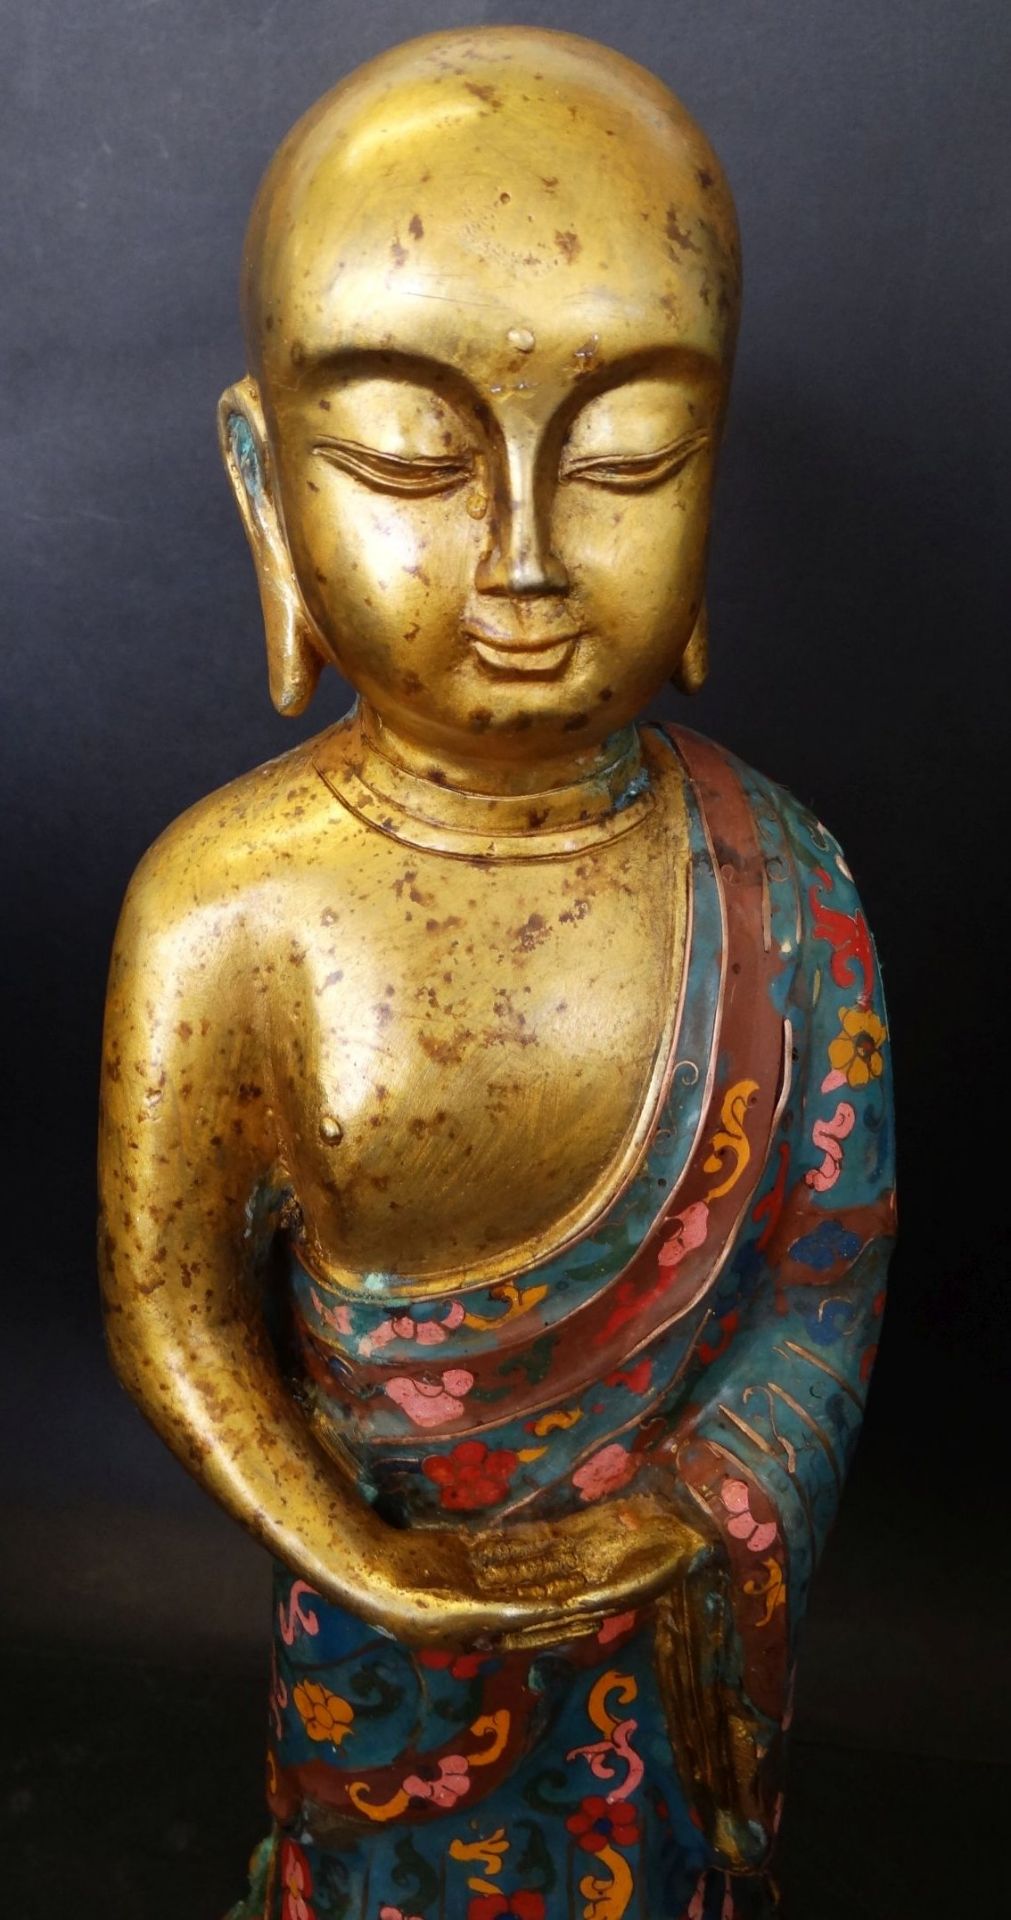 grosser, betender Bronze Buddha, floral bemalt, ungepflegter Kellerfund, fleckig und mit Grünspan, - Bild 2 aus 9